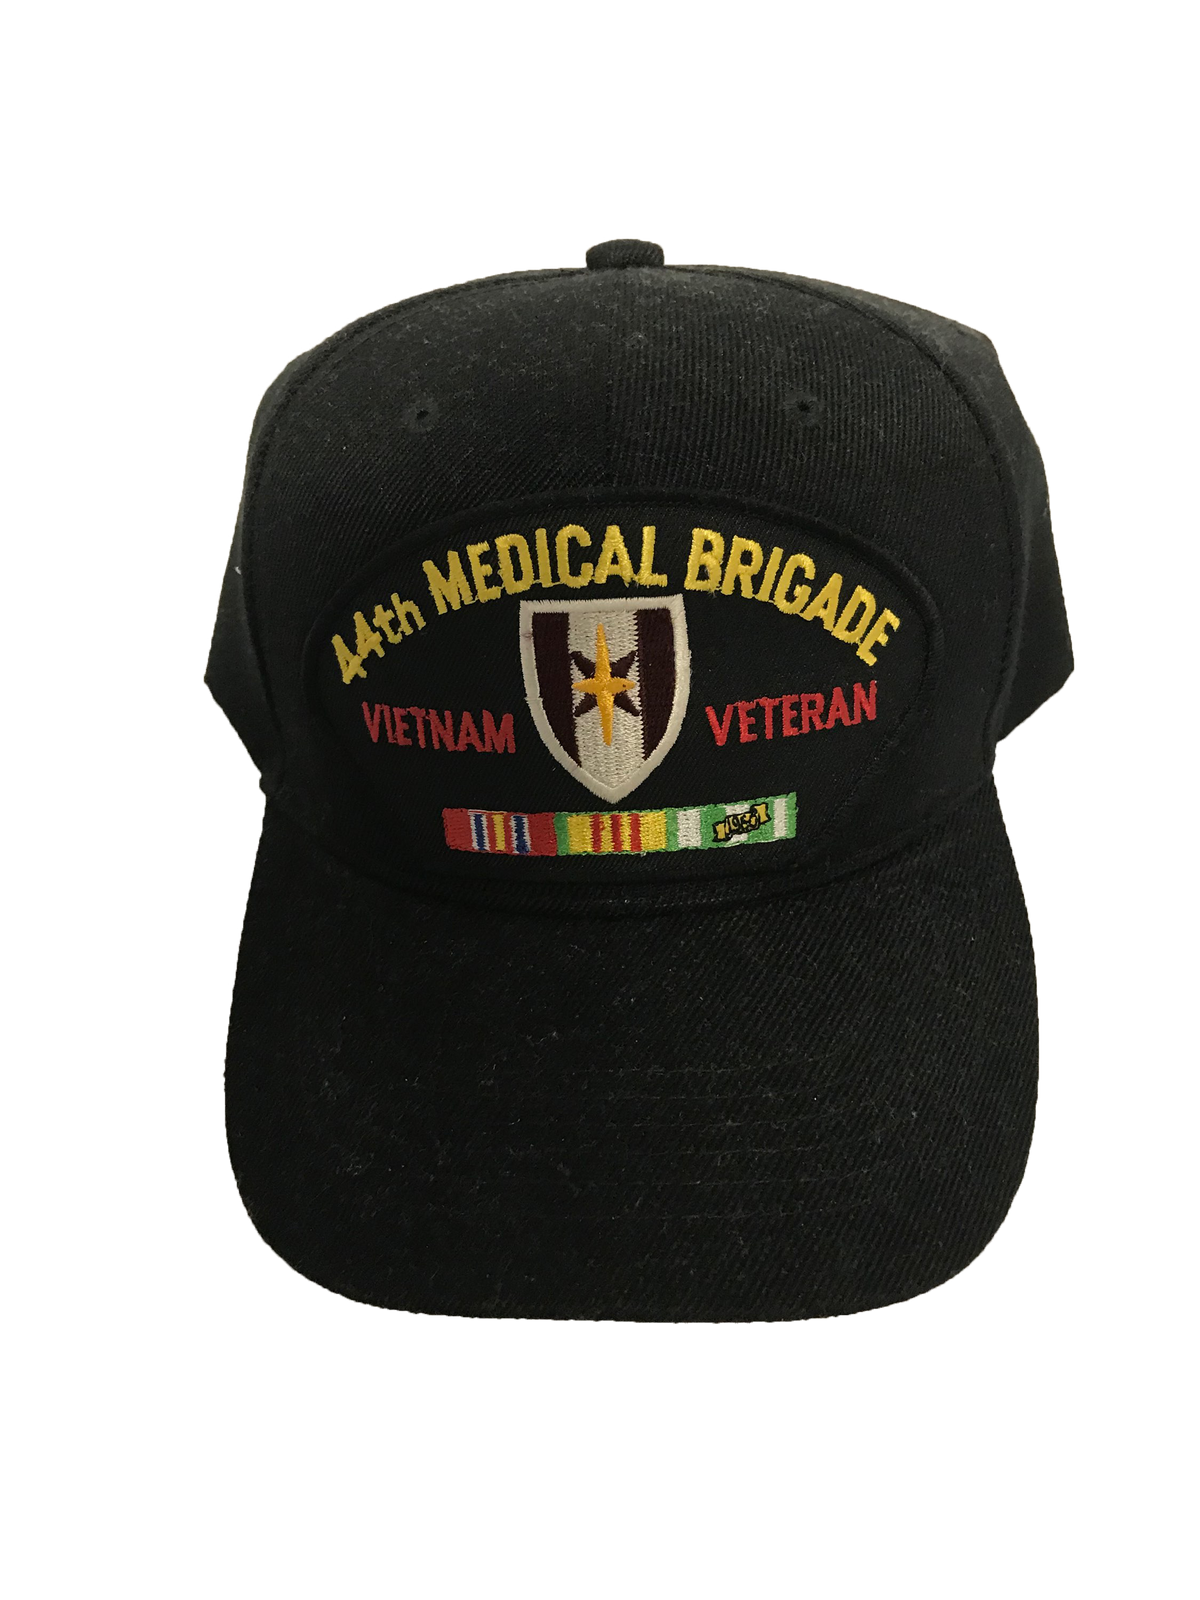 44th Medical Brigade Vietnam Veteran Ballcap